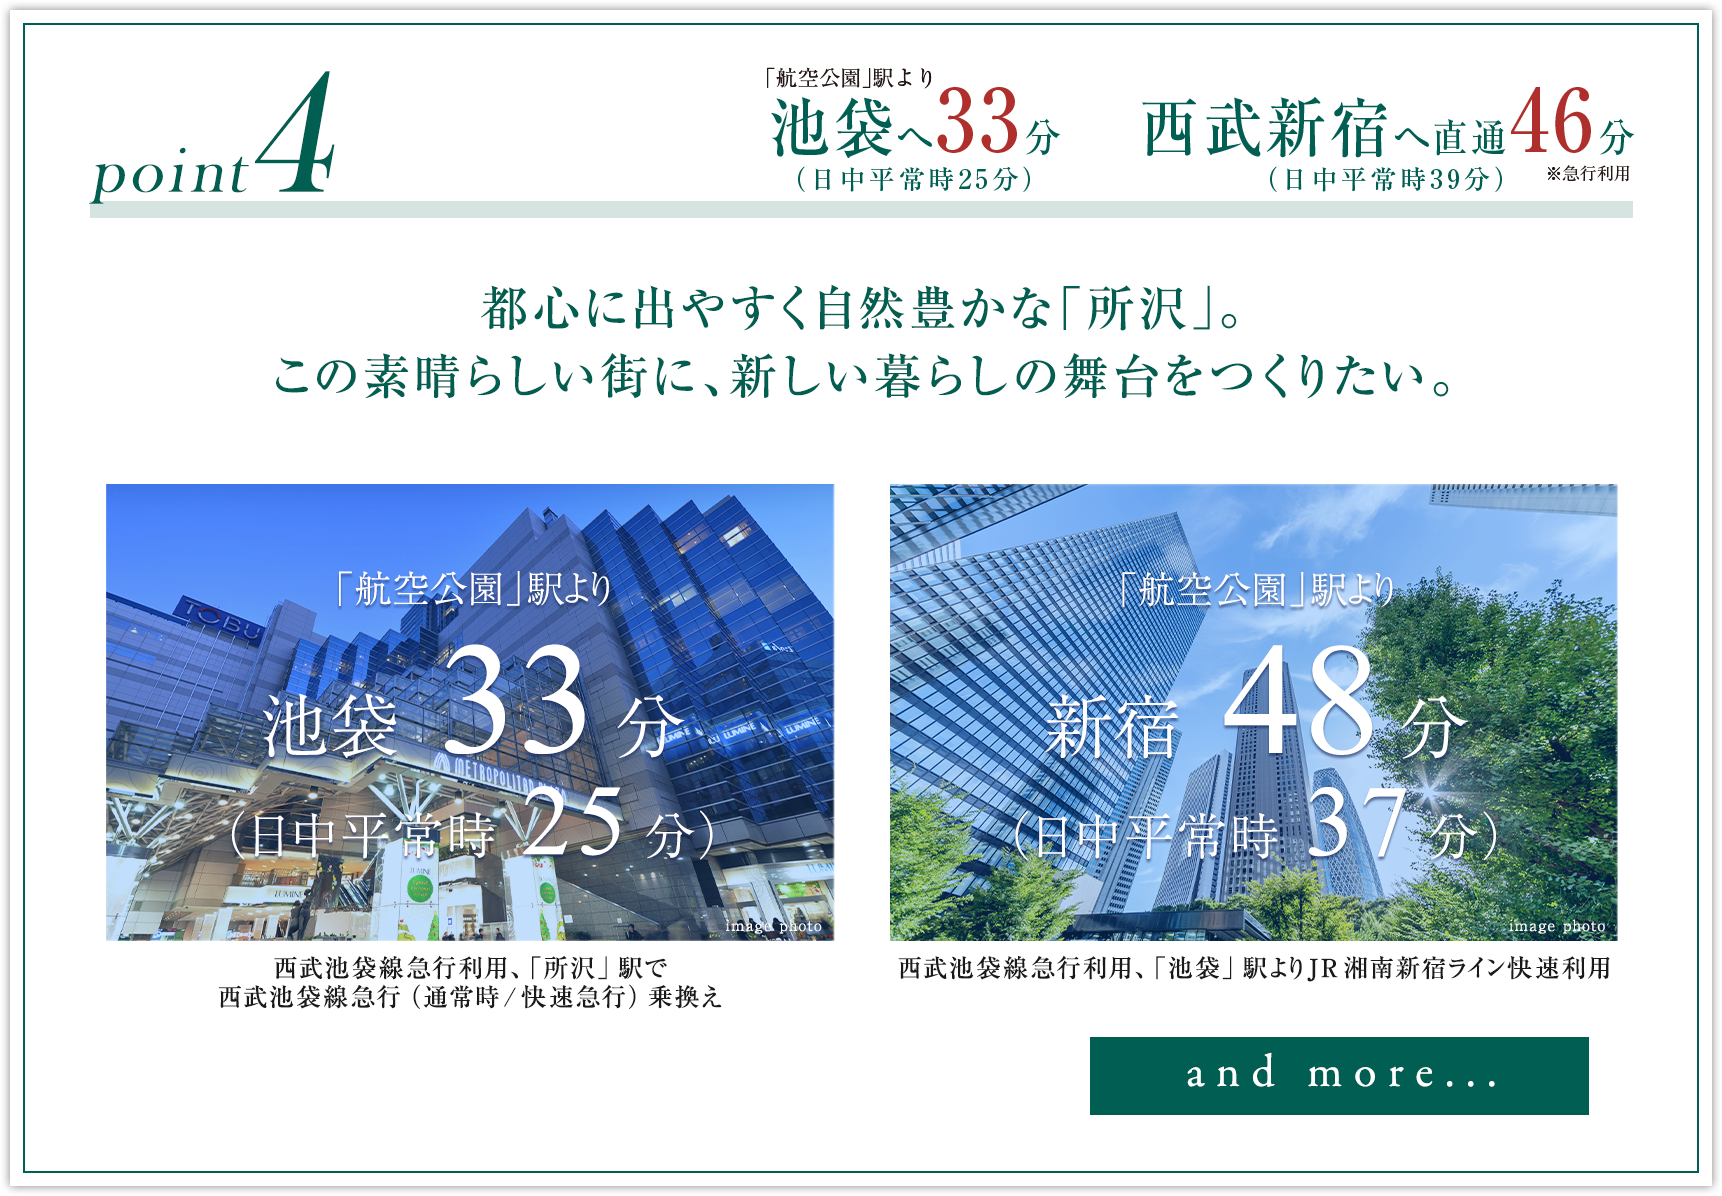 都心に出やすく自然豊かな「所沢」。池袋へ33分。西武新宿へ直通46分。